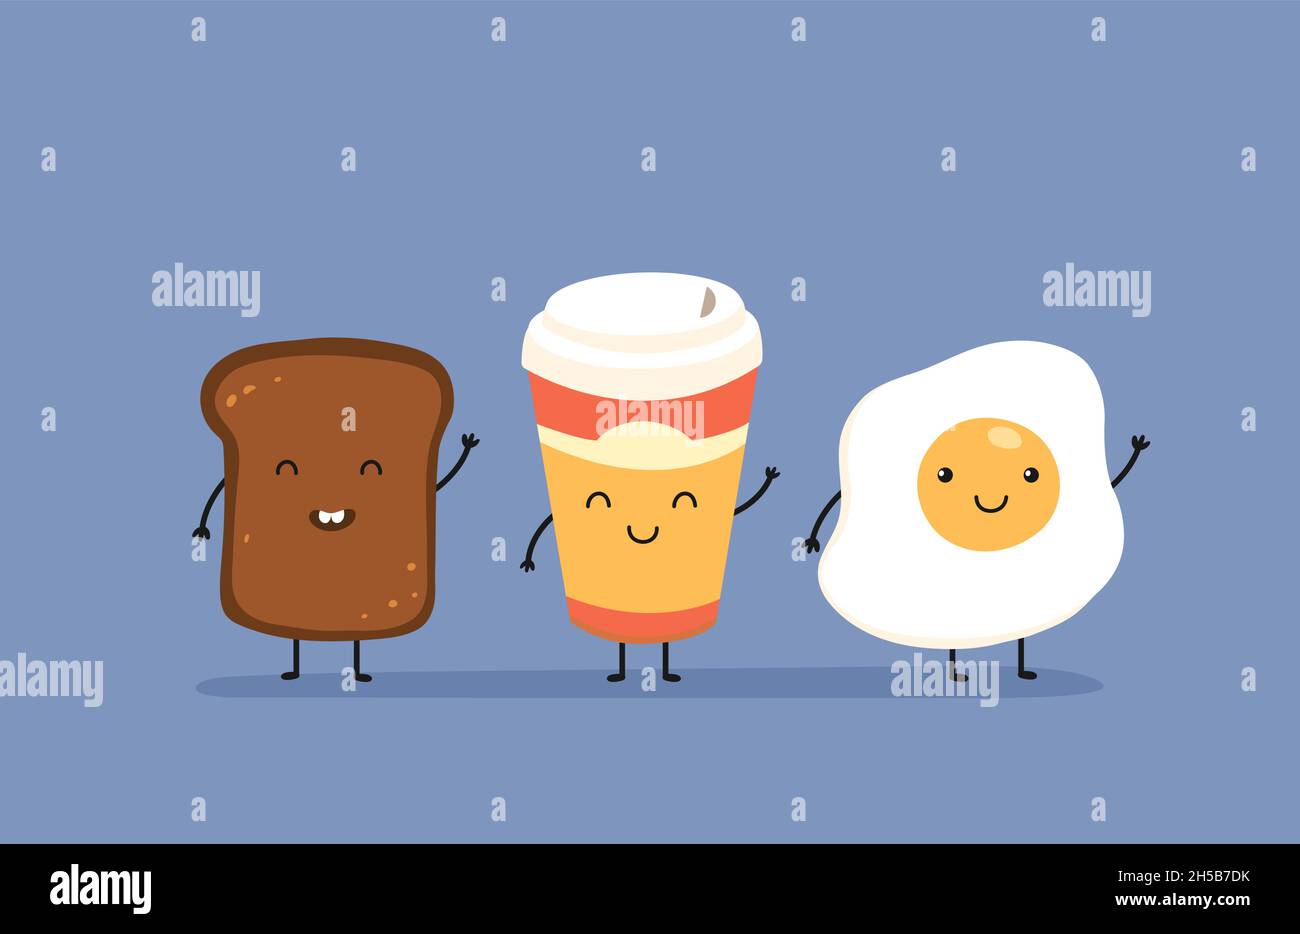 Frühstück sagen wir Hallo. Süße Kawaii Spiegelei, Brot Toast und Tasse Kaffee. Vektor-Karte mit köstlichem Essen am Morgen Stock Vektor